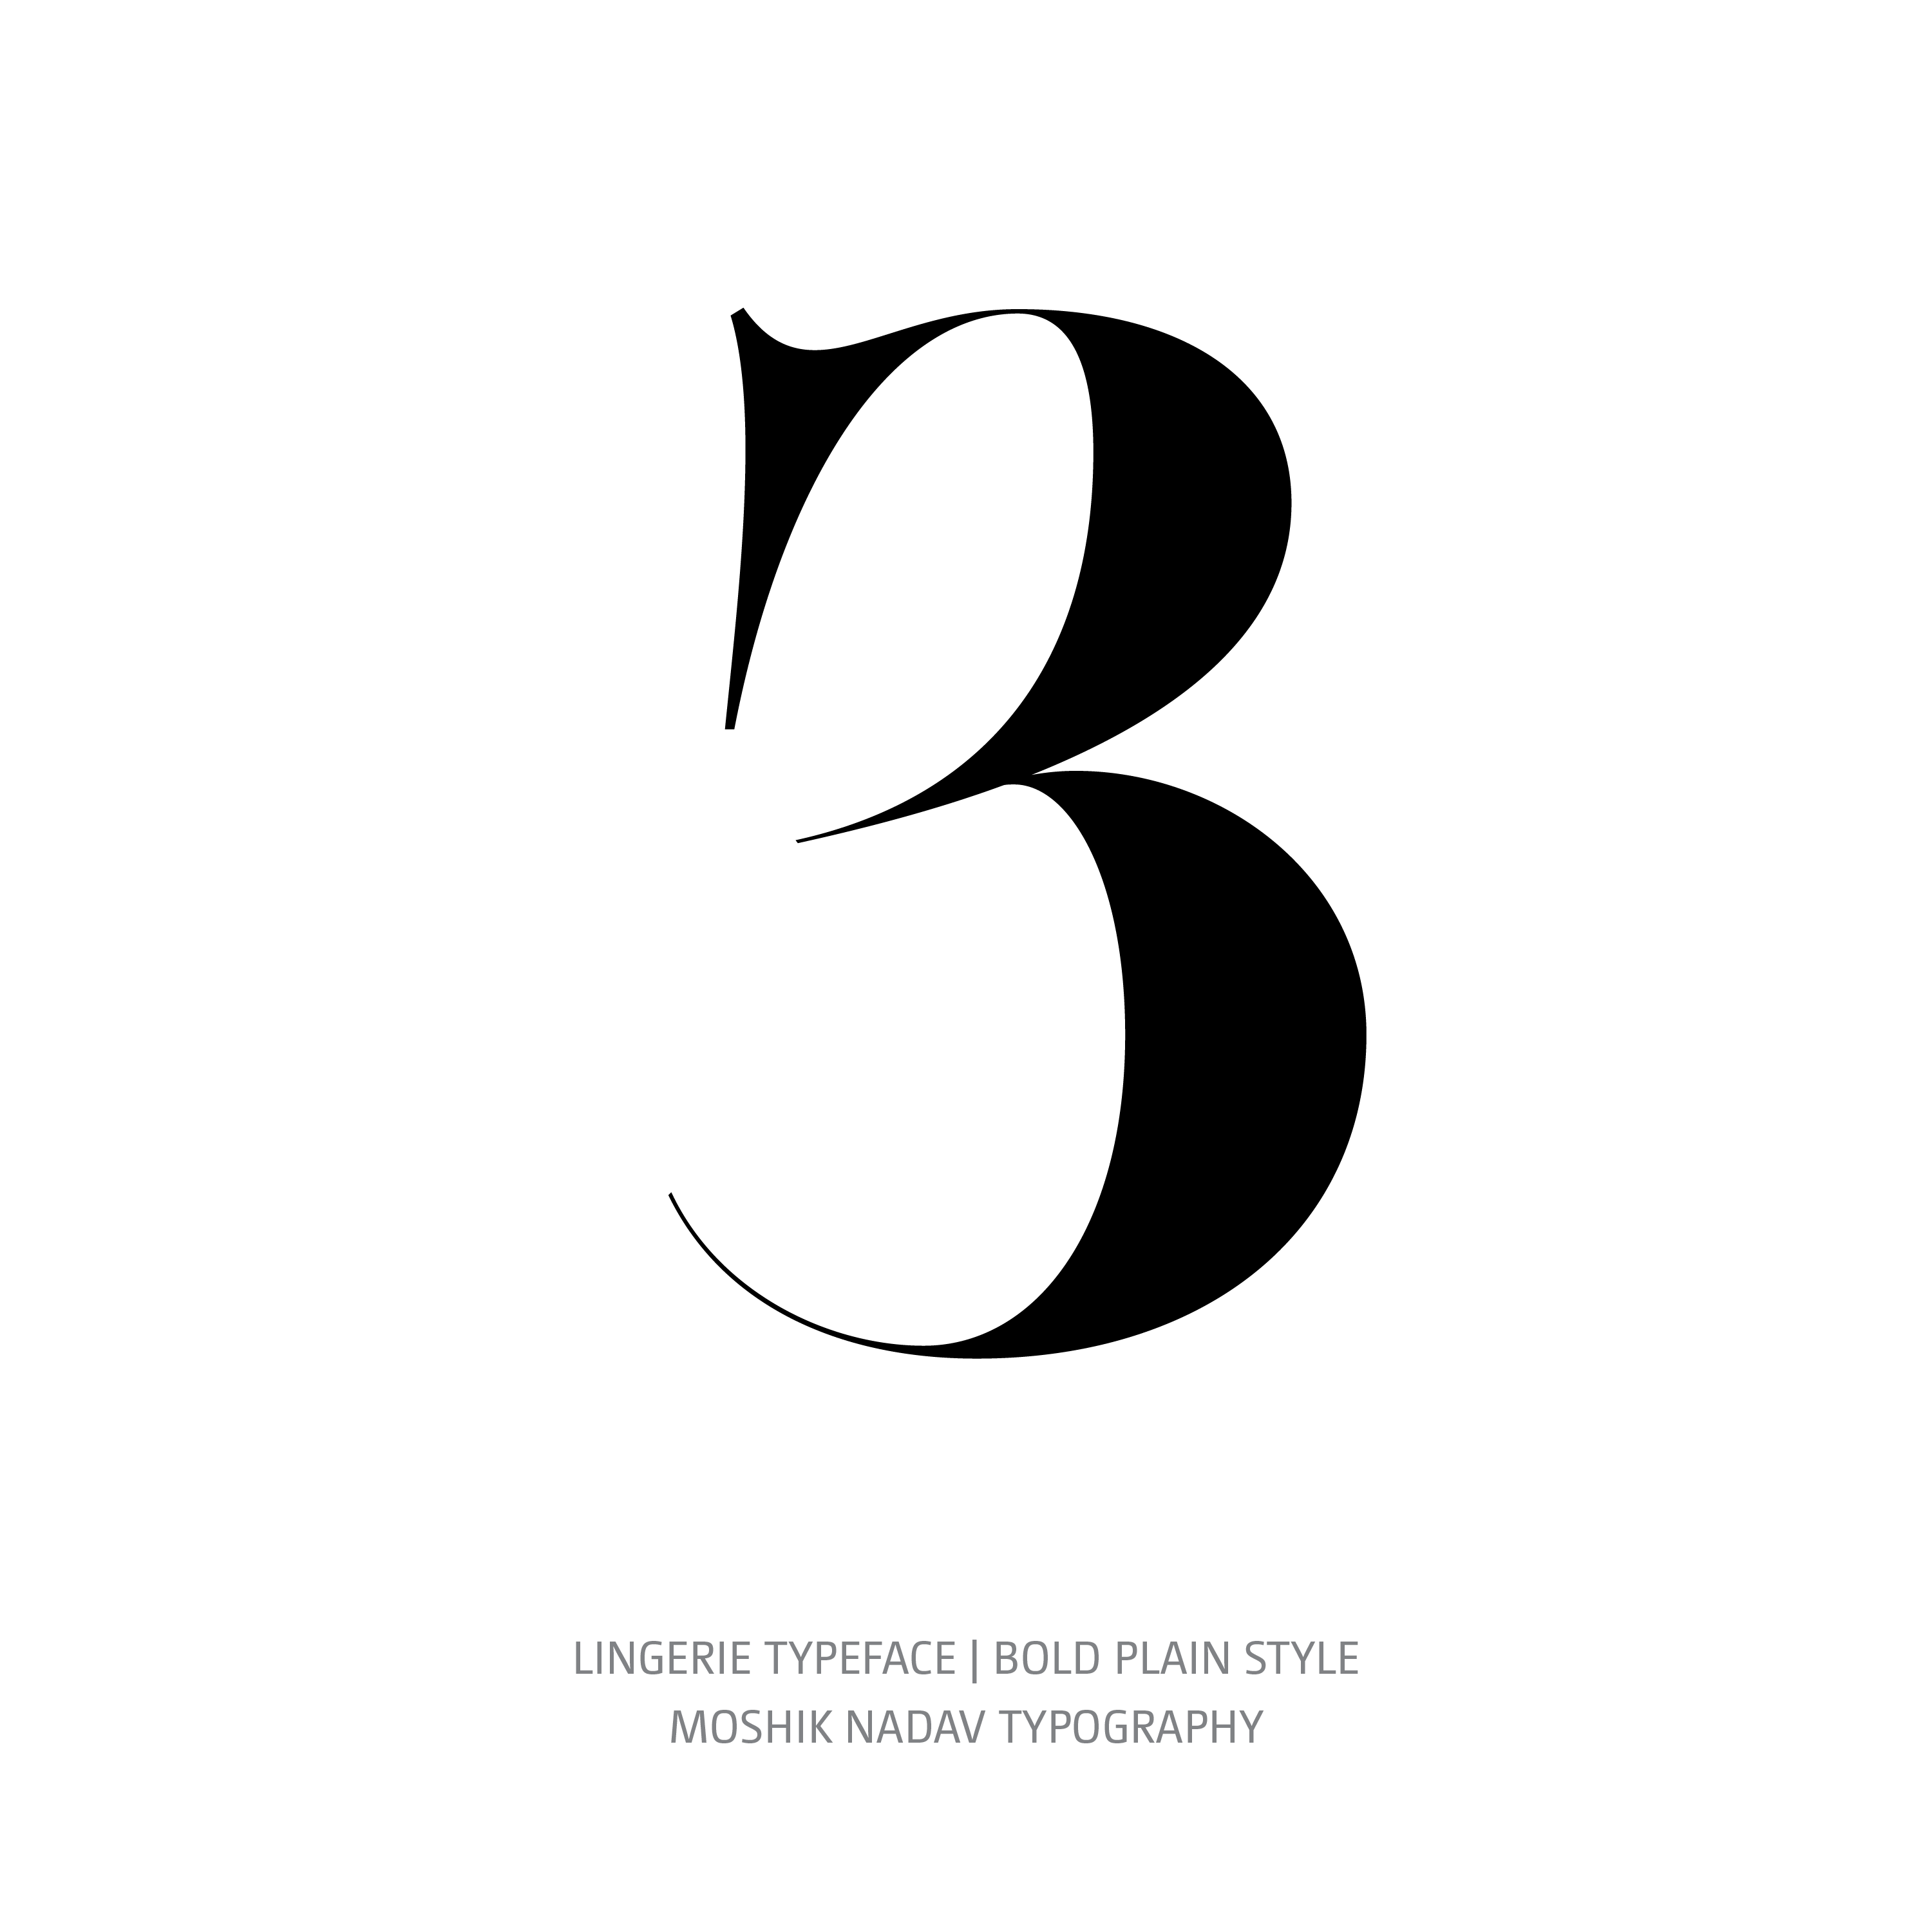 Lingerie Typeface Bold Plain 3